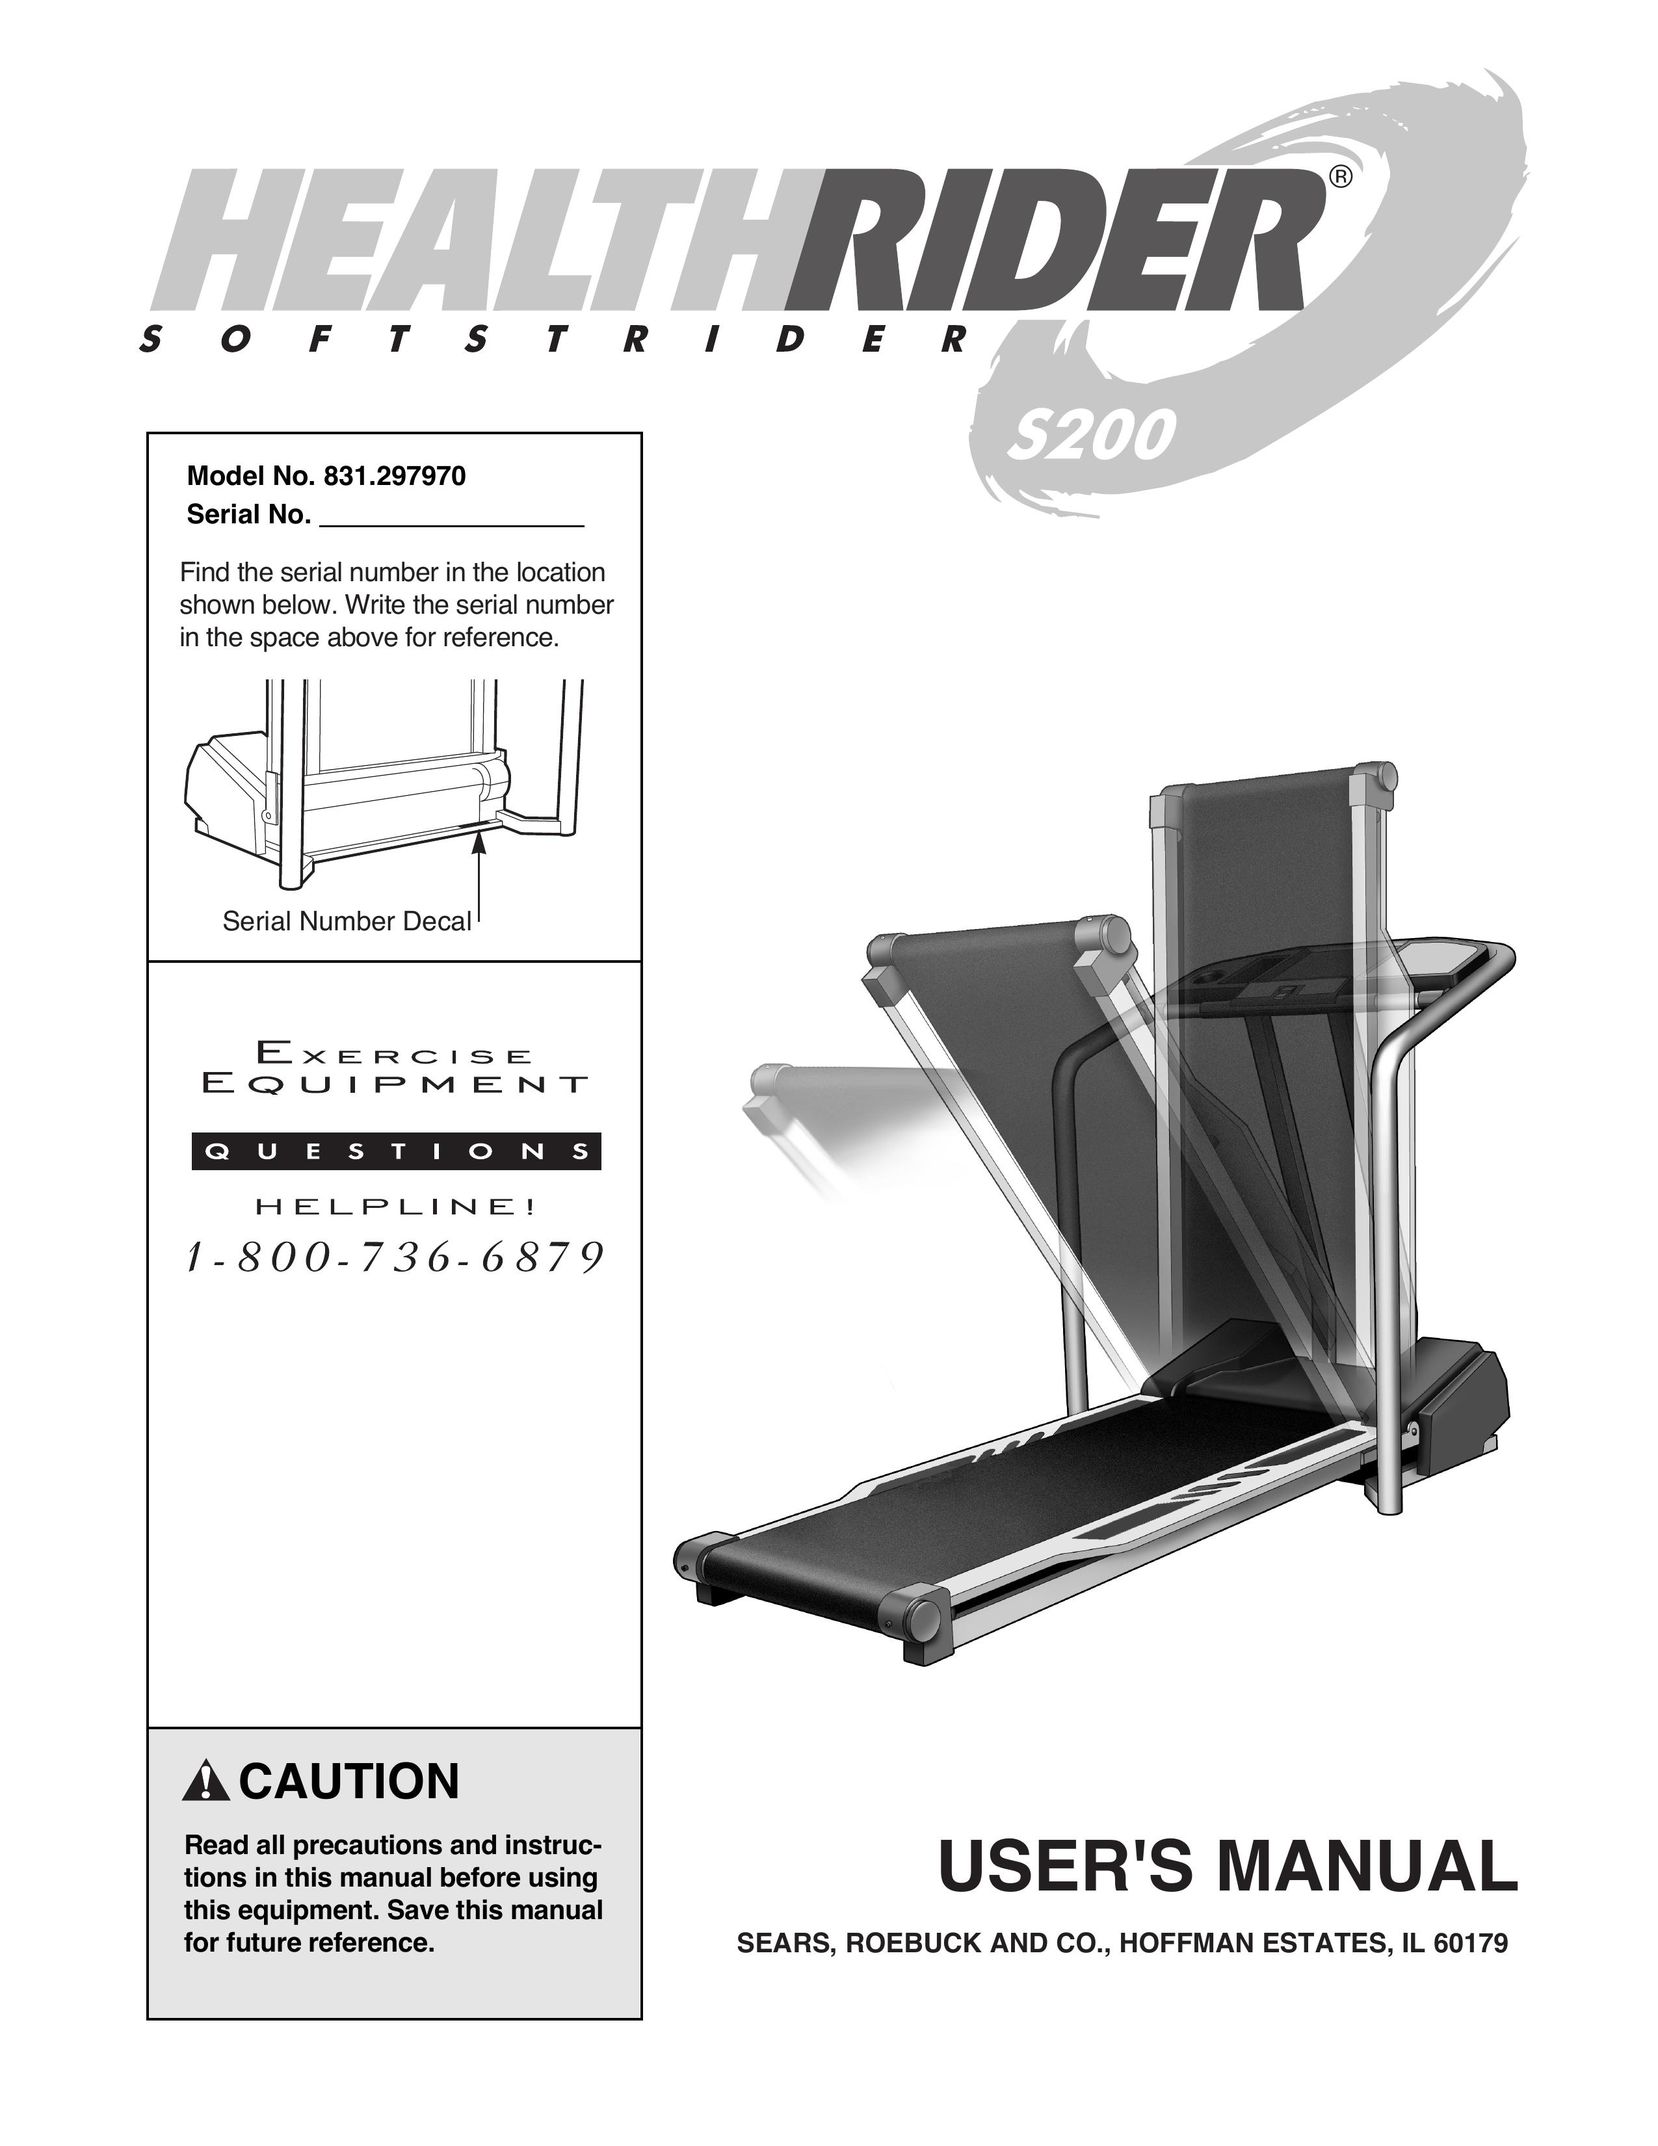 Healthrider 831.297970 Treadmill User Manual